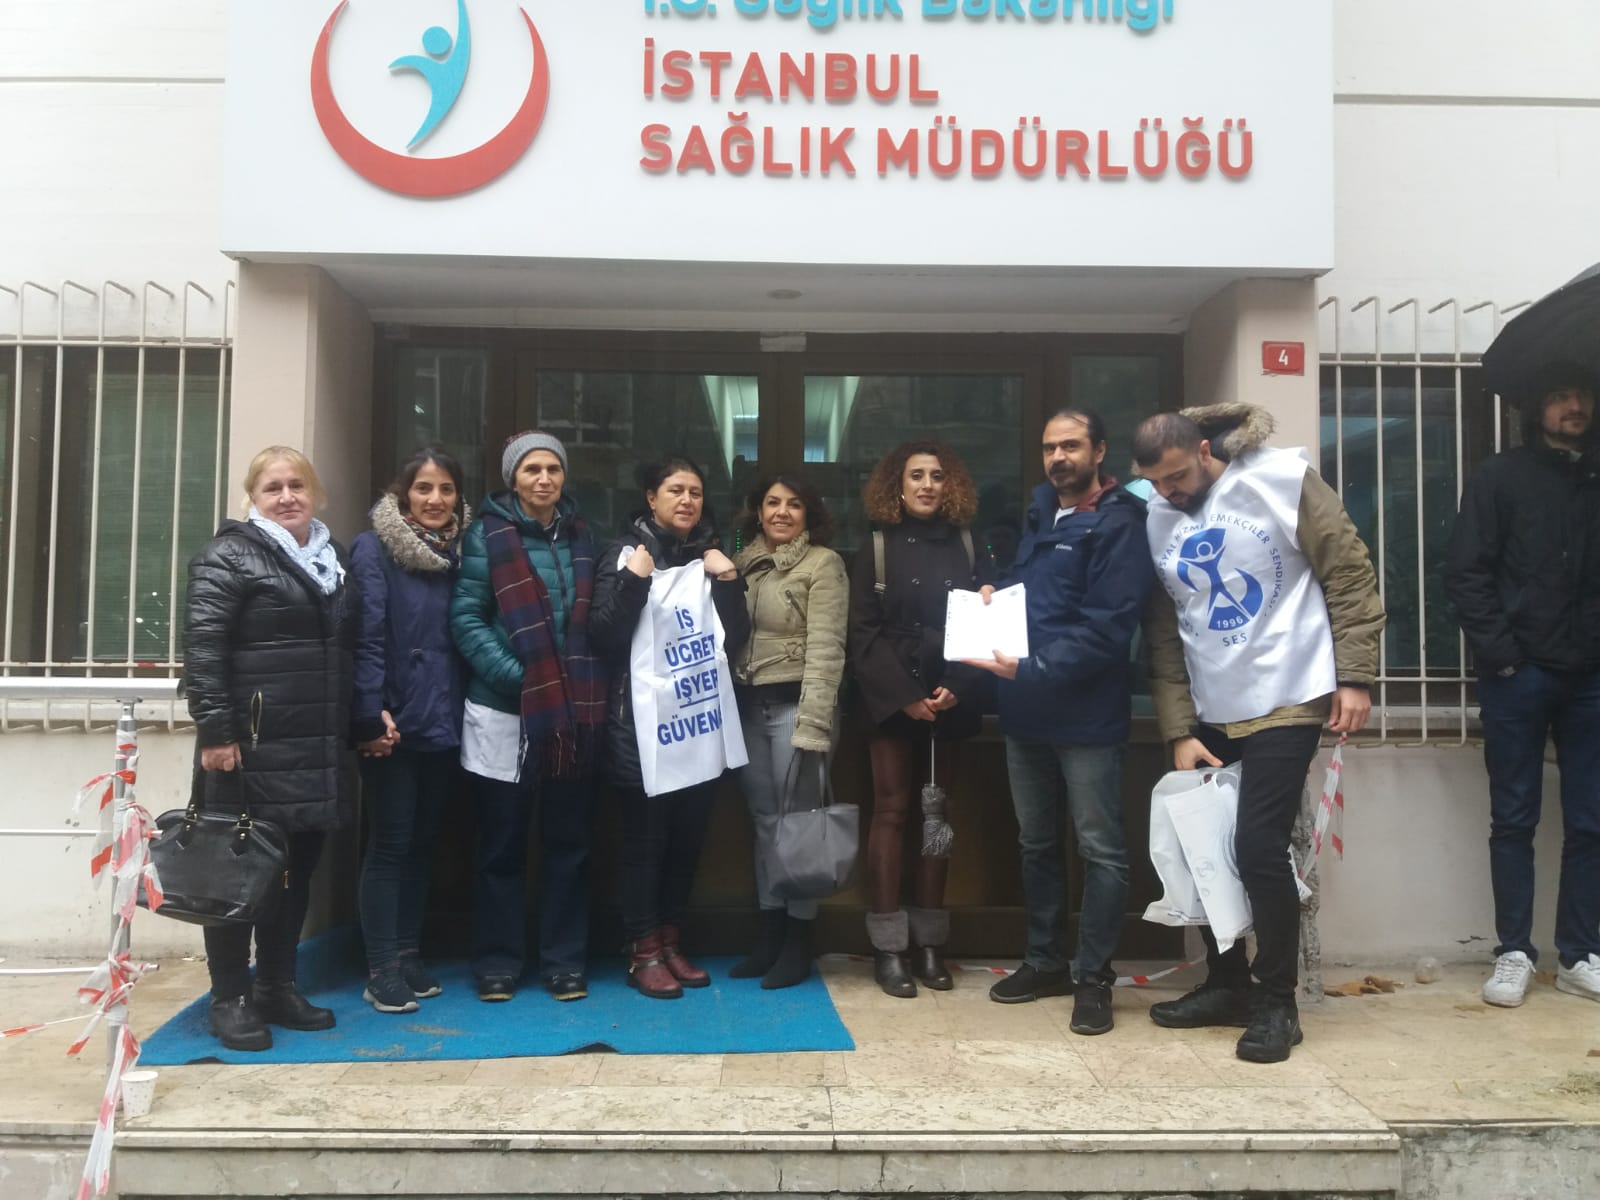 Şişli Şubemiz Kıyafet Standartlarına Karşı Topladığı İmzaları İstanbul İl Sağlık Müdürlüğü’ne İletti